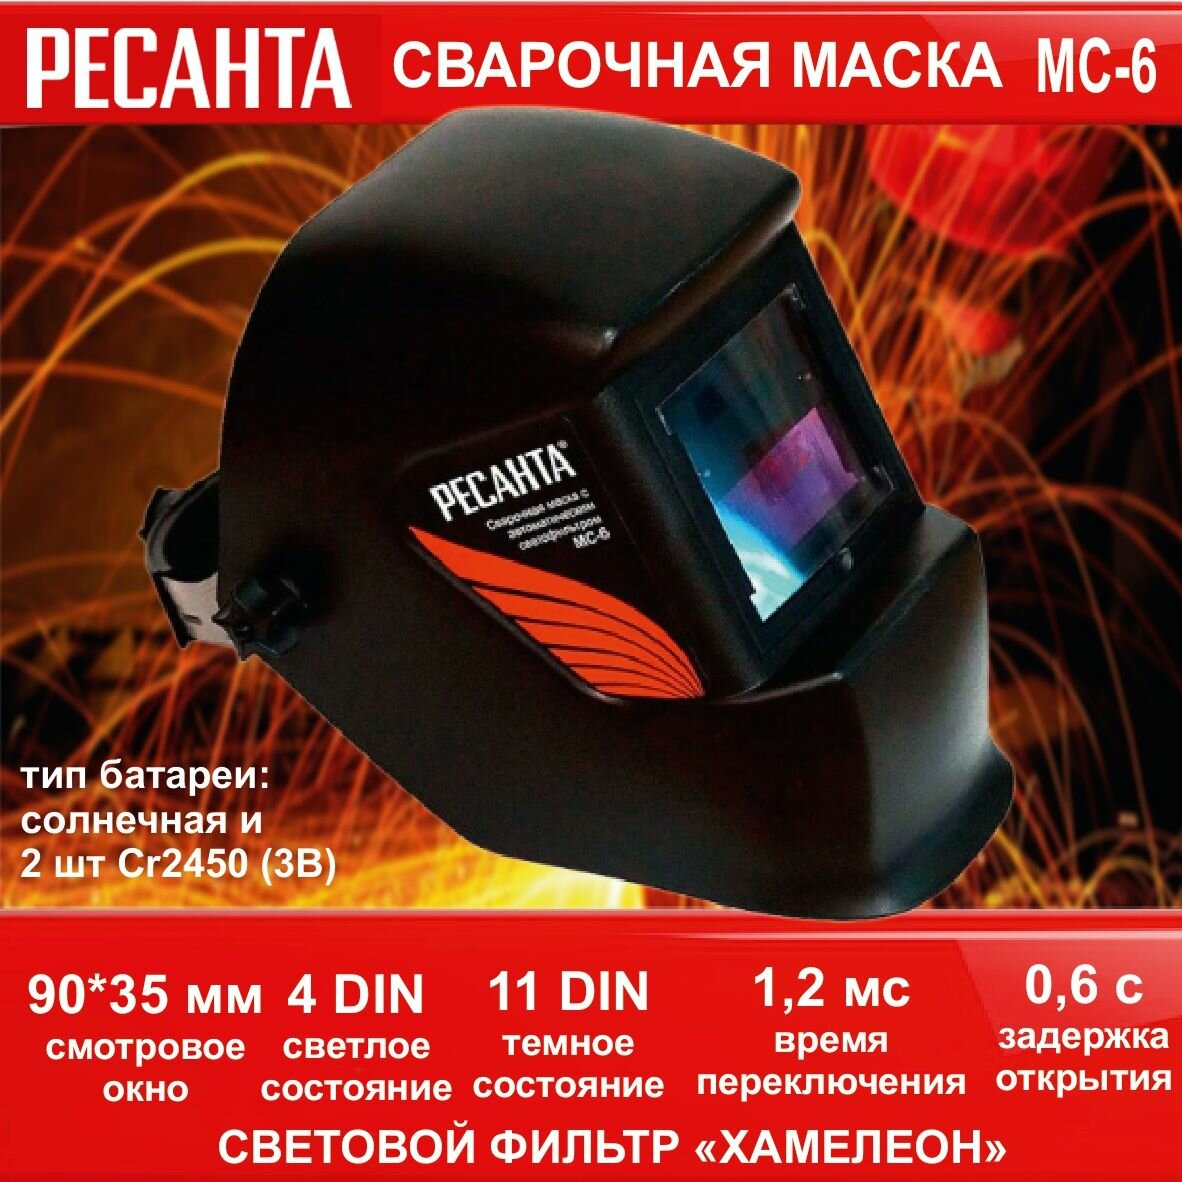 Сварочная маска МС-6 Ресанта (окно 90*35 мм, темное состояние 11DIN), светлое - 4, переключение 1,2 мс, задержка открытия 0,6с) щиток для сварки